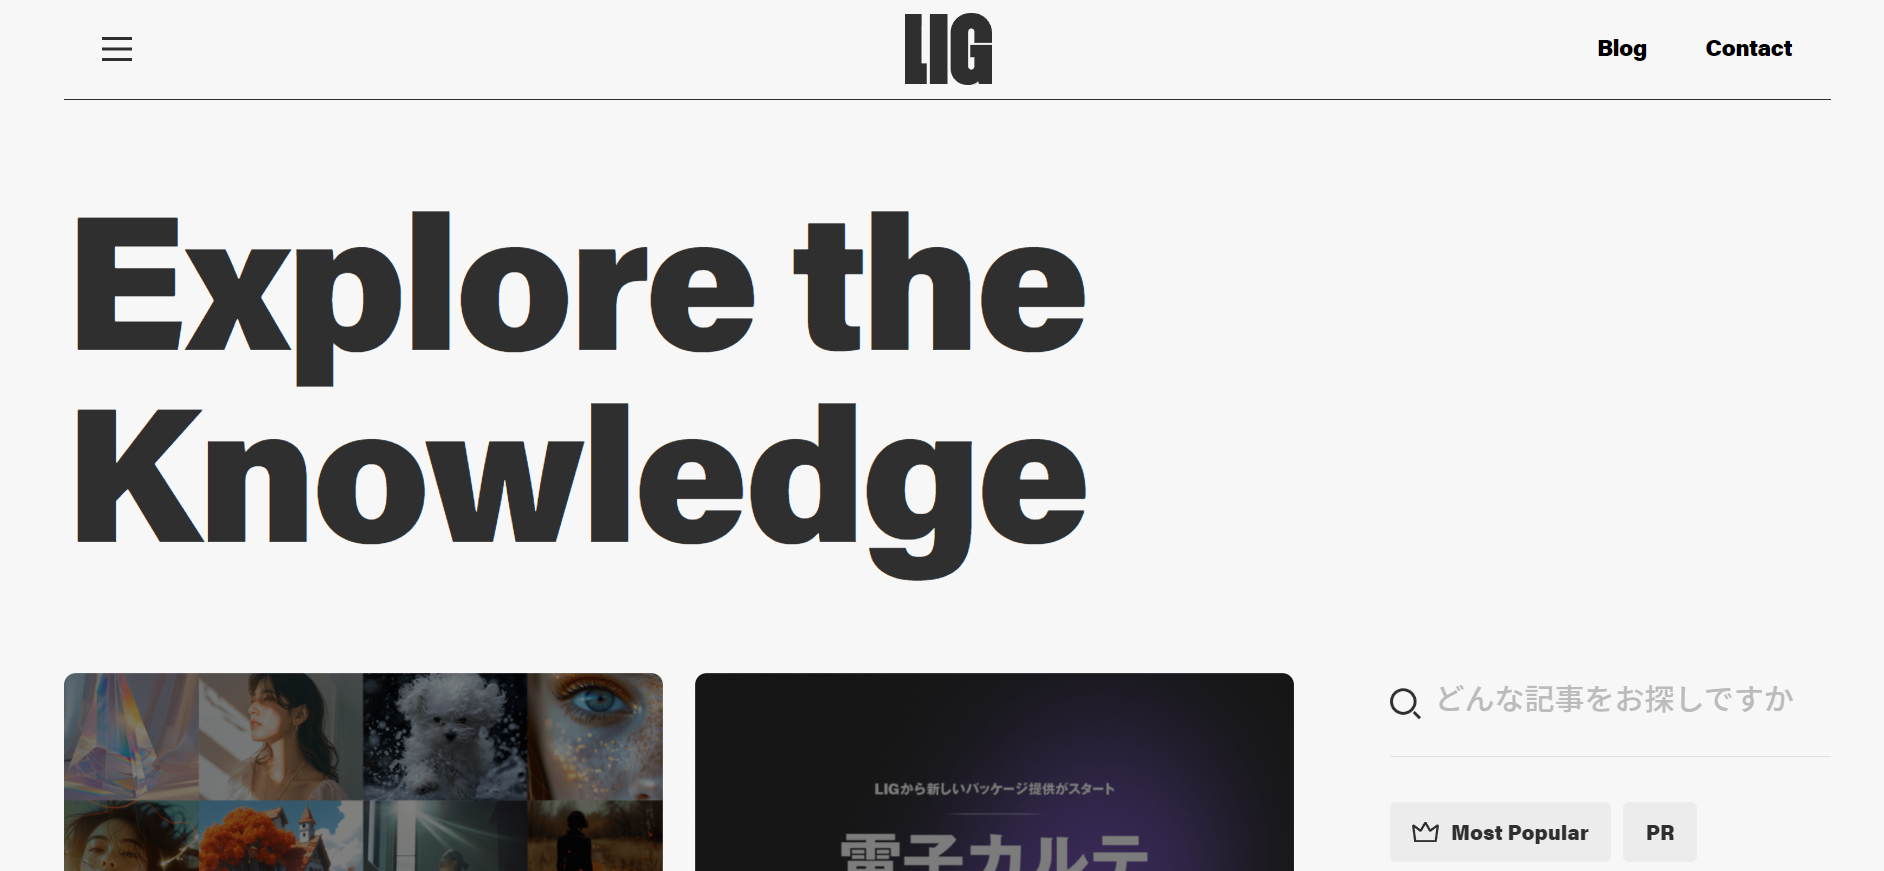 成功事例5．LIGブログ（株式会社LIG）